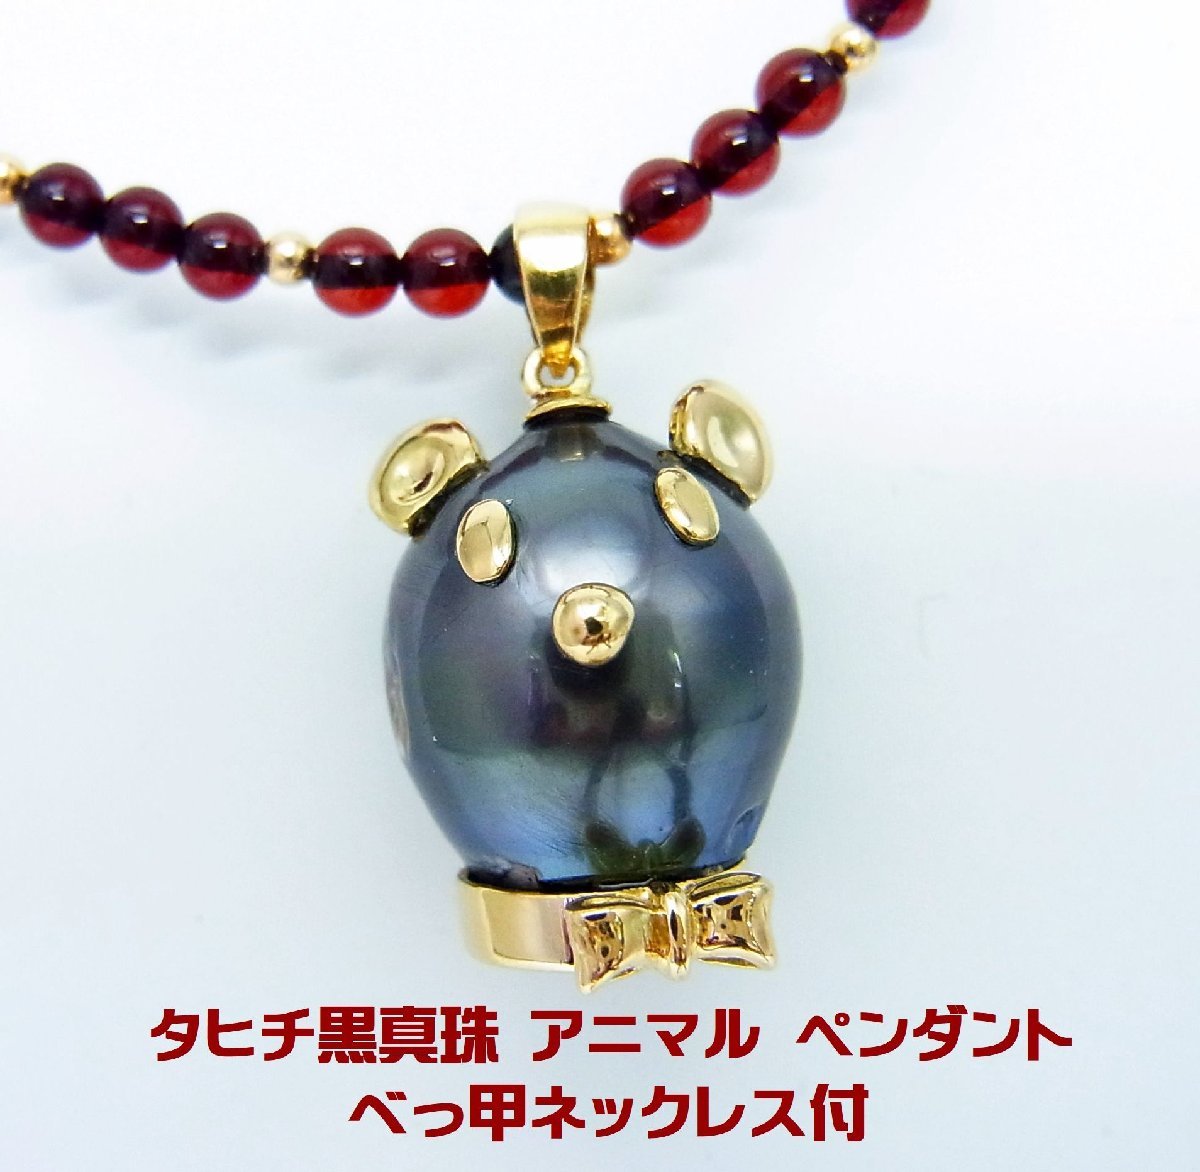 有名な高級ブランド タヒチ黒真珠13.5ミリ珠 アニマル ペンダント 天然